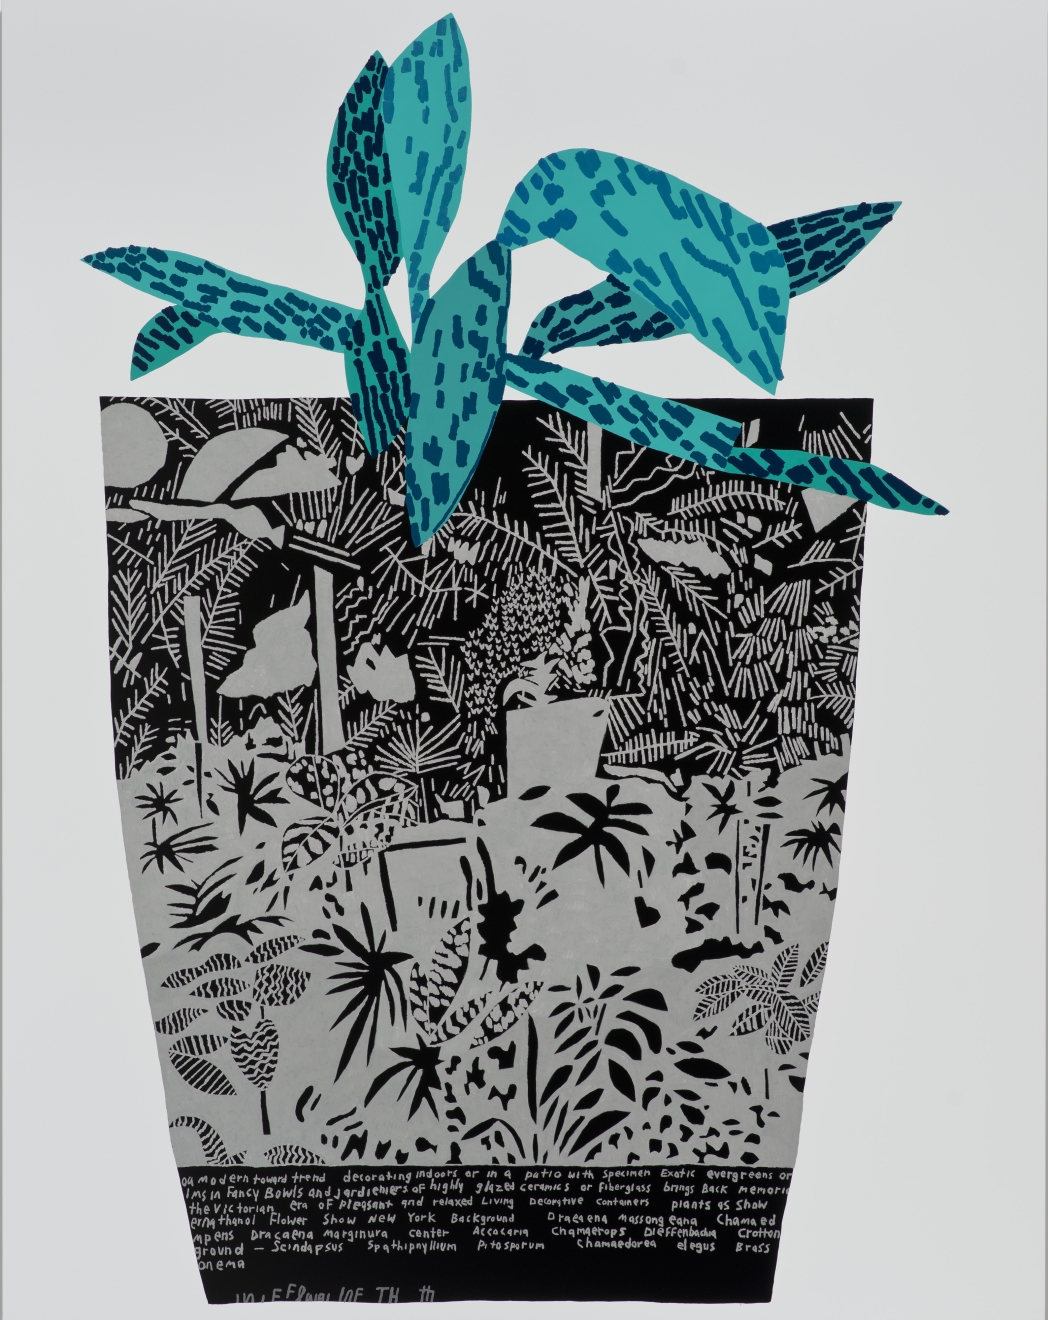 Jonas Wood, Black Landscape Pot with Blue Plant, 2014